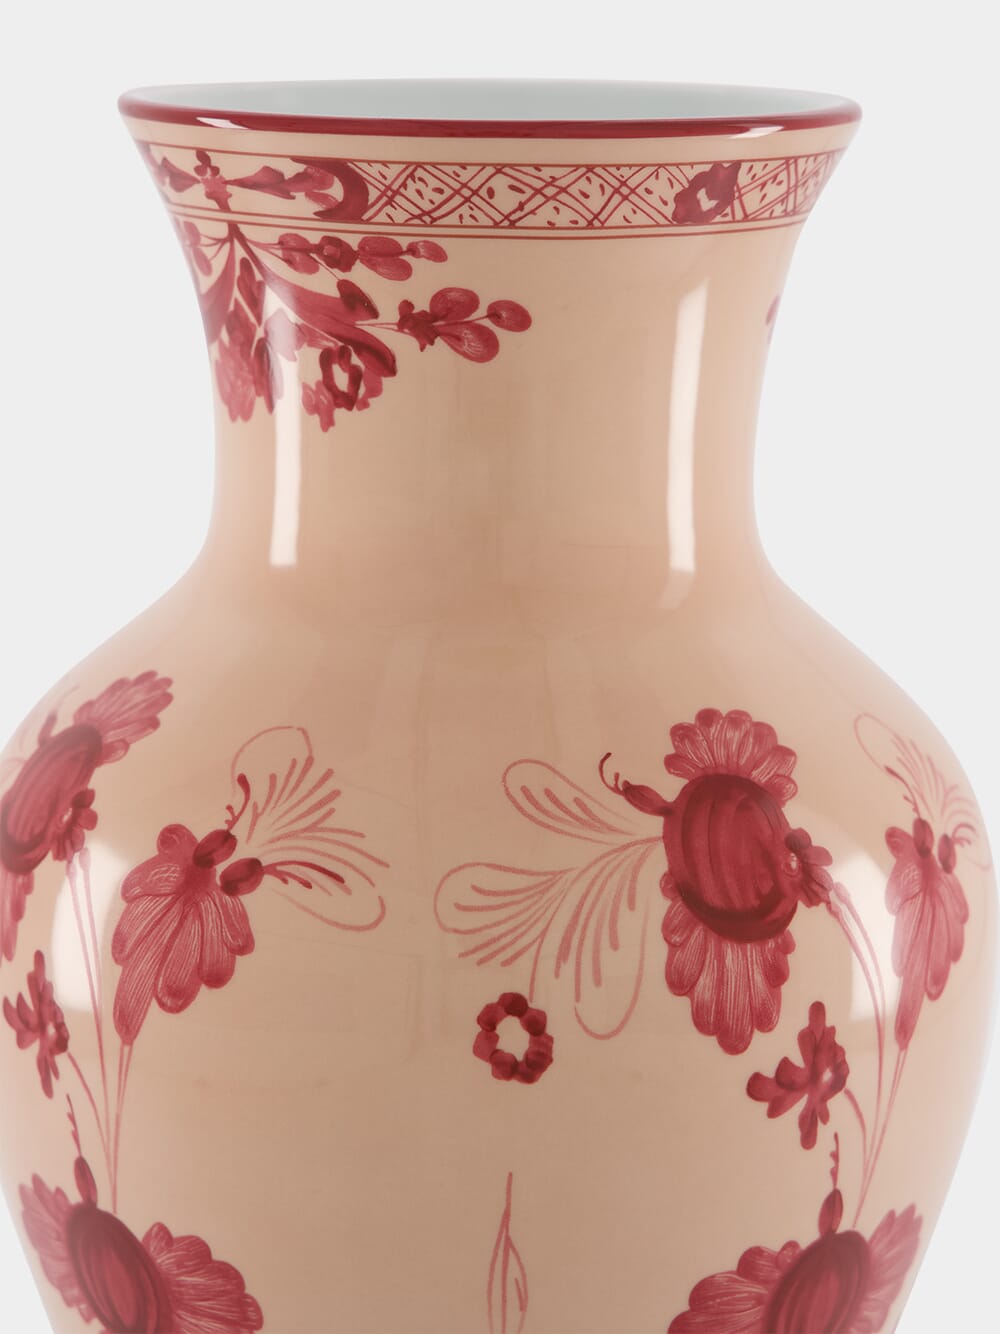 Oriente Italiano Vermiglio Large Ming Vase